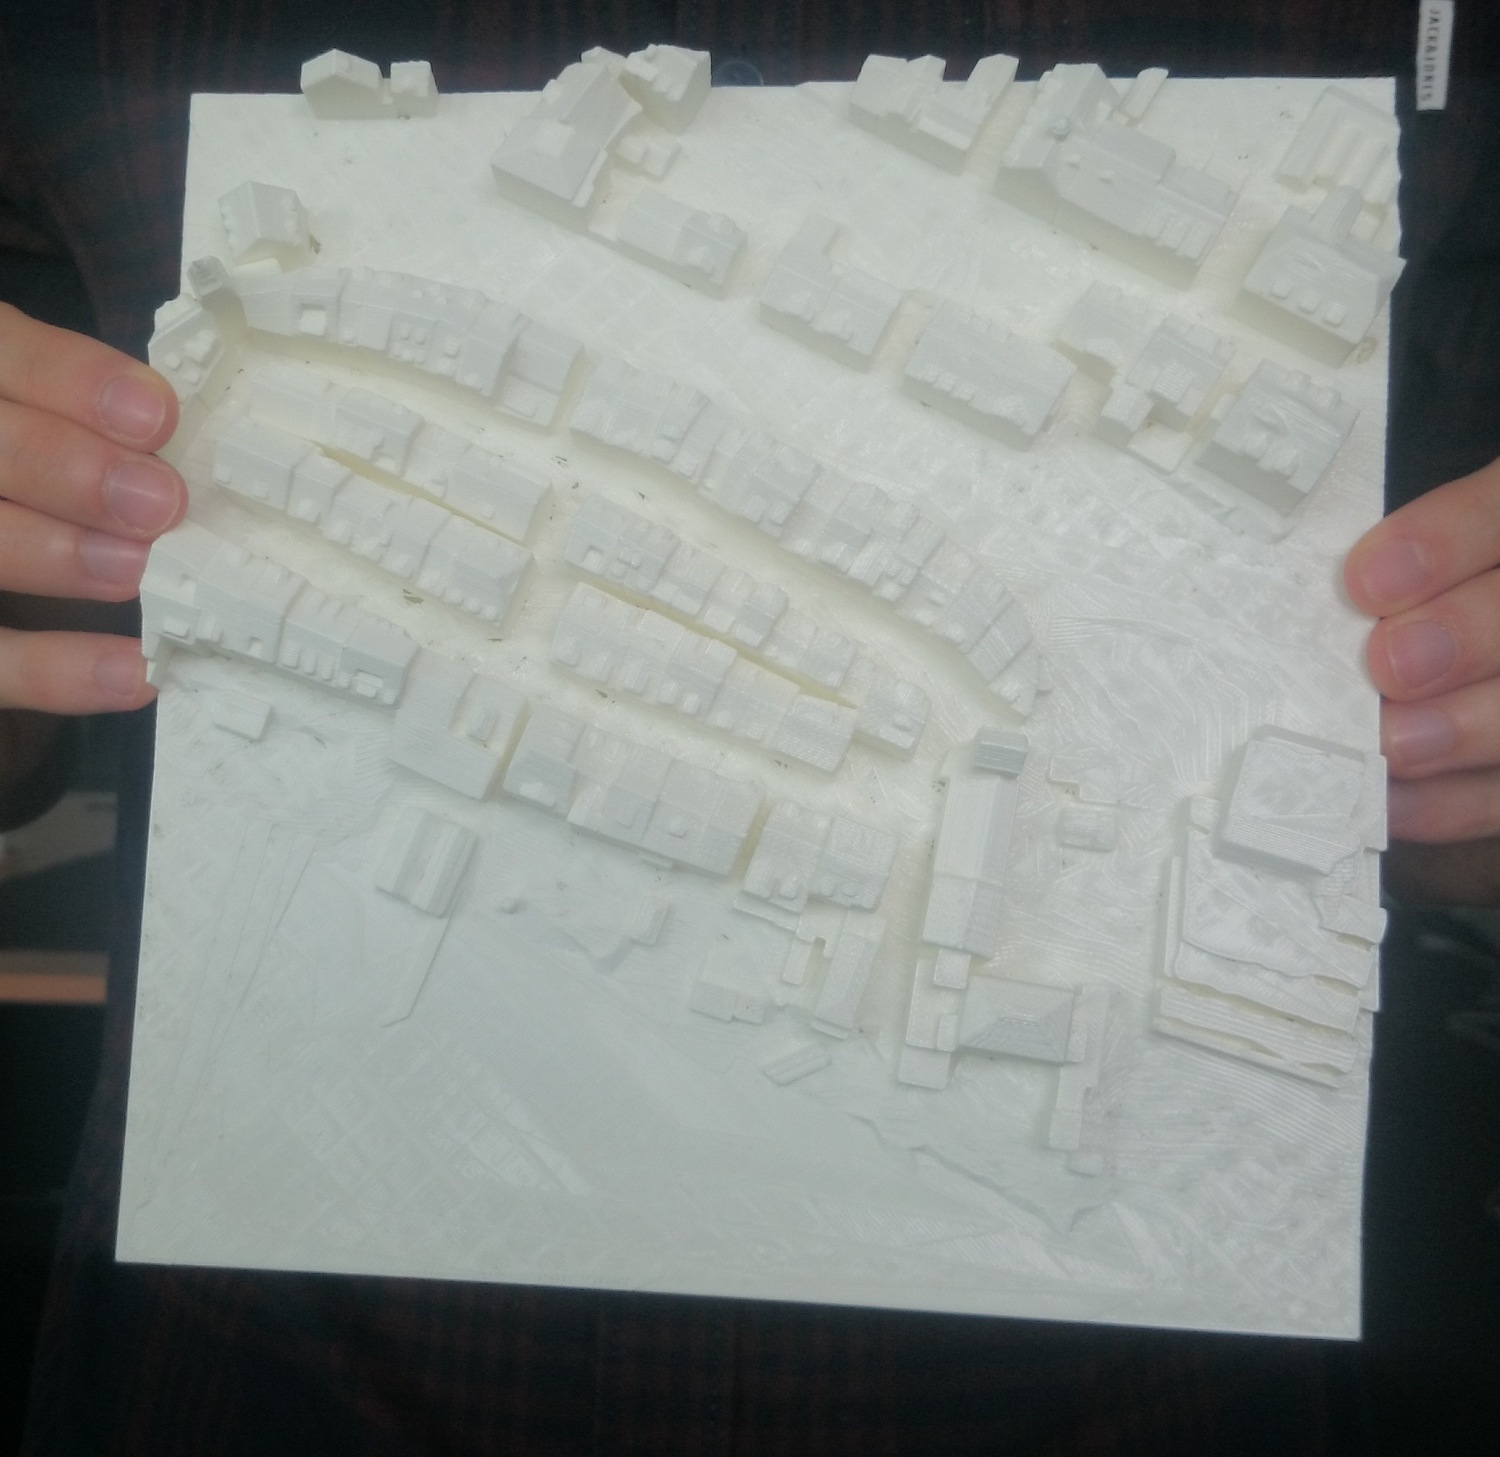 Vom Stadtmodell am Bildschirm bekommt man via 3D-Drucker etwas zum Anfassen in die Finger. Hier die Zuger Altstadt.